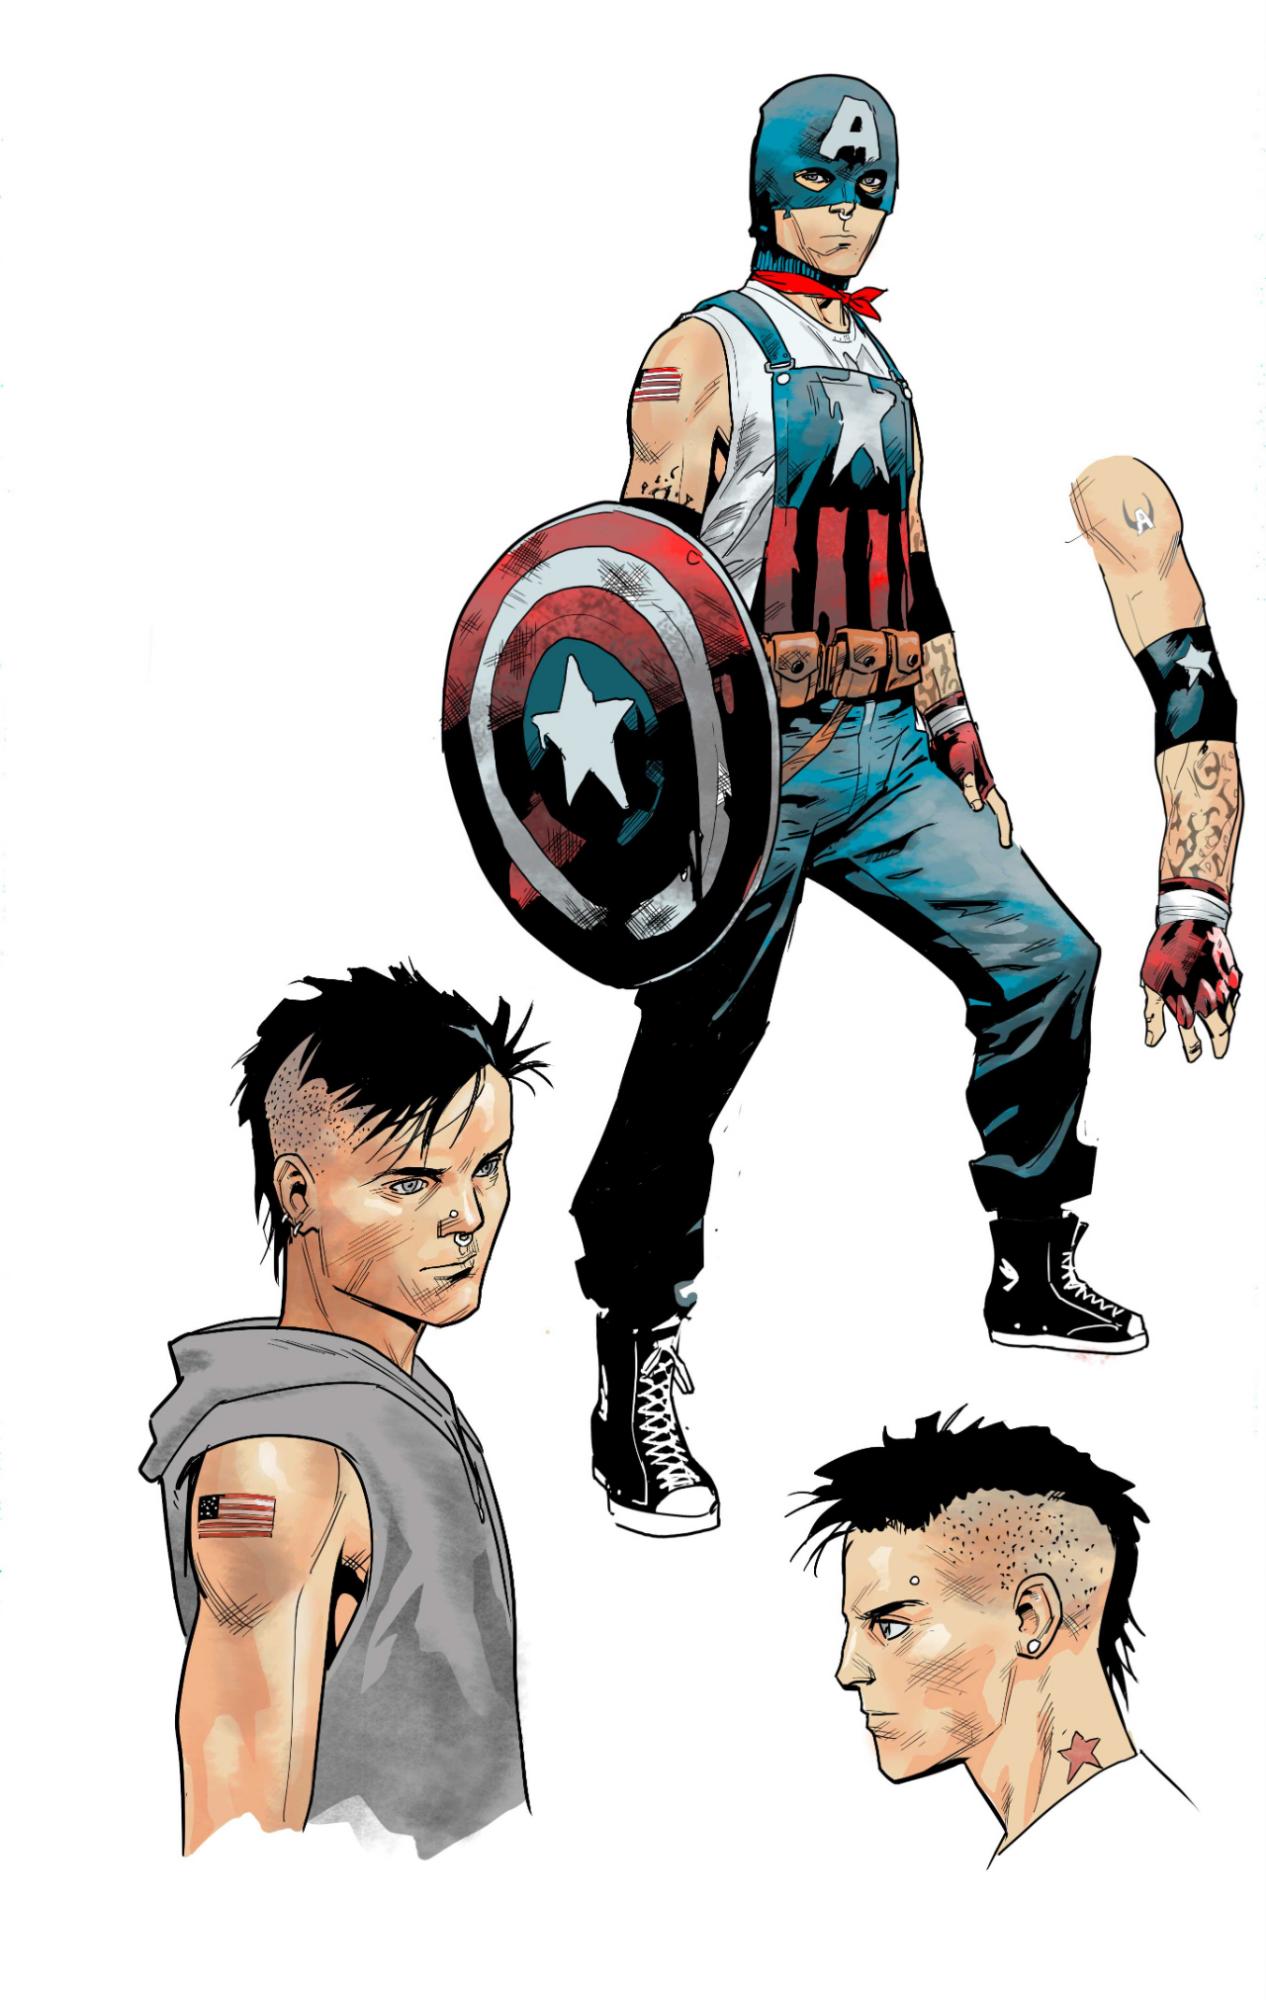 $!El nuevo cómic abre la posibilidad de presentar diferentes versiones del Capitán América en distintas comunidades